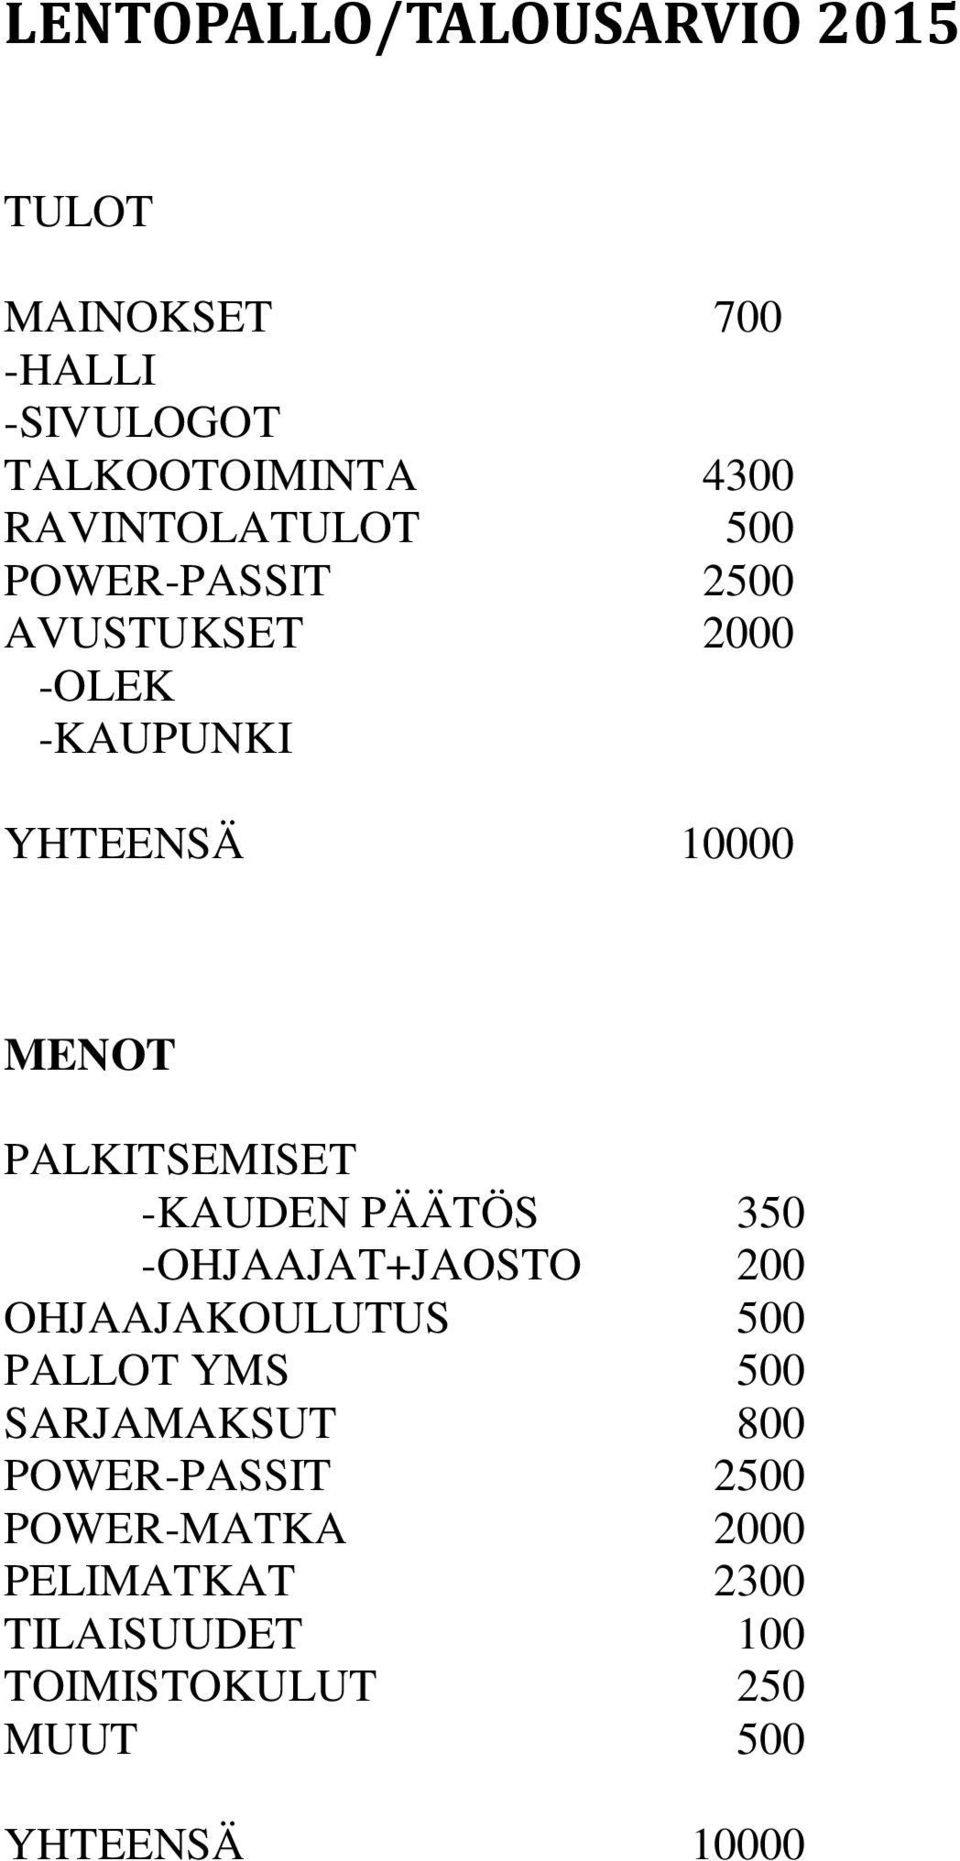 PALKITSEMISET -KAUDEN PÄÄTÖS 350 -OHJAAJAT+JAOSTO 200 OHJAAJAKOULUTUS 500 PALLOT YMS 500